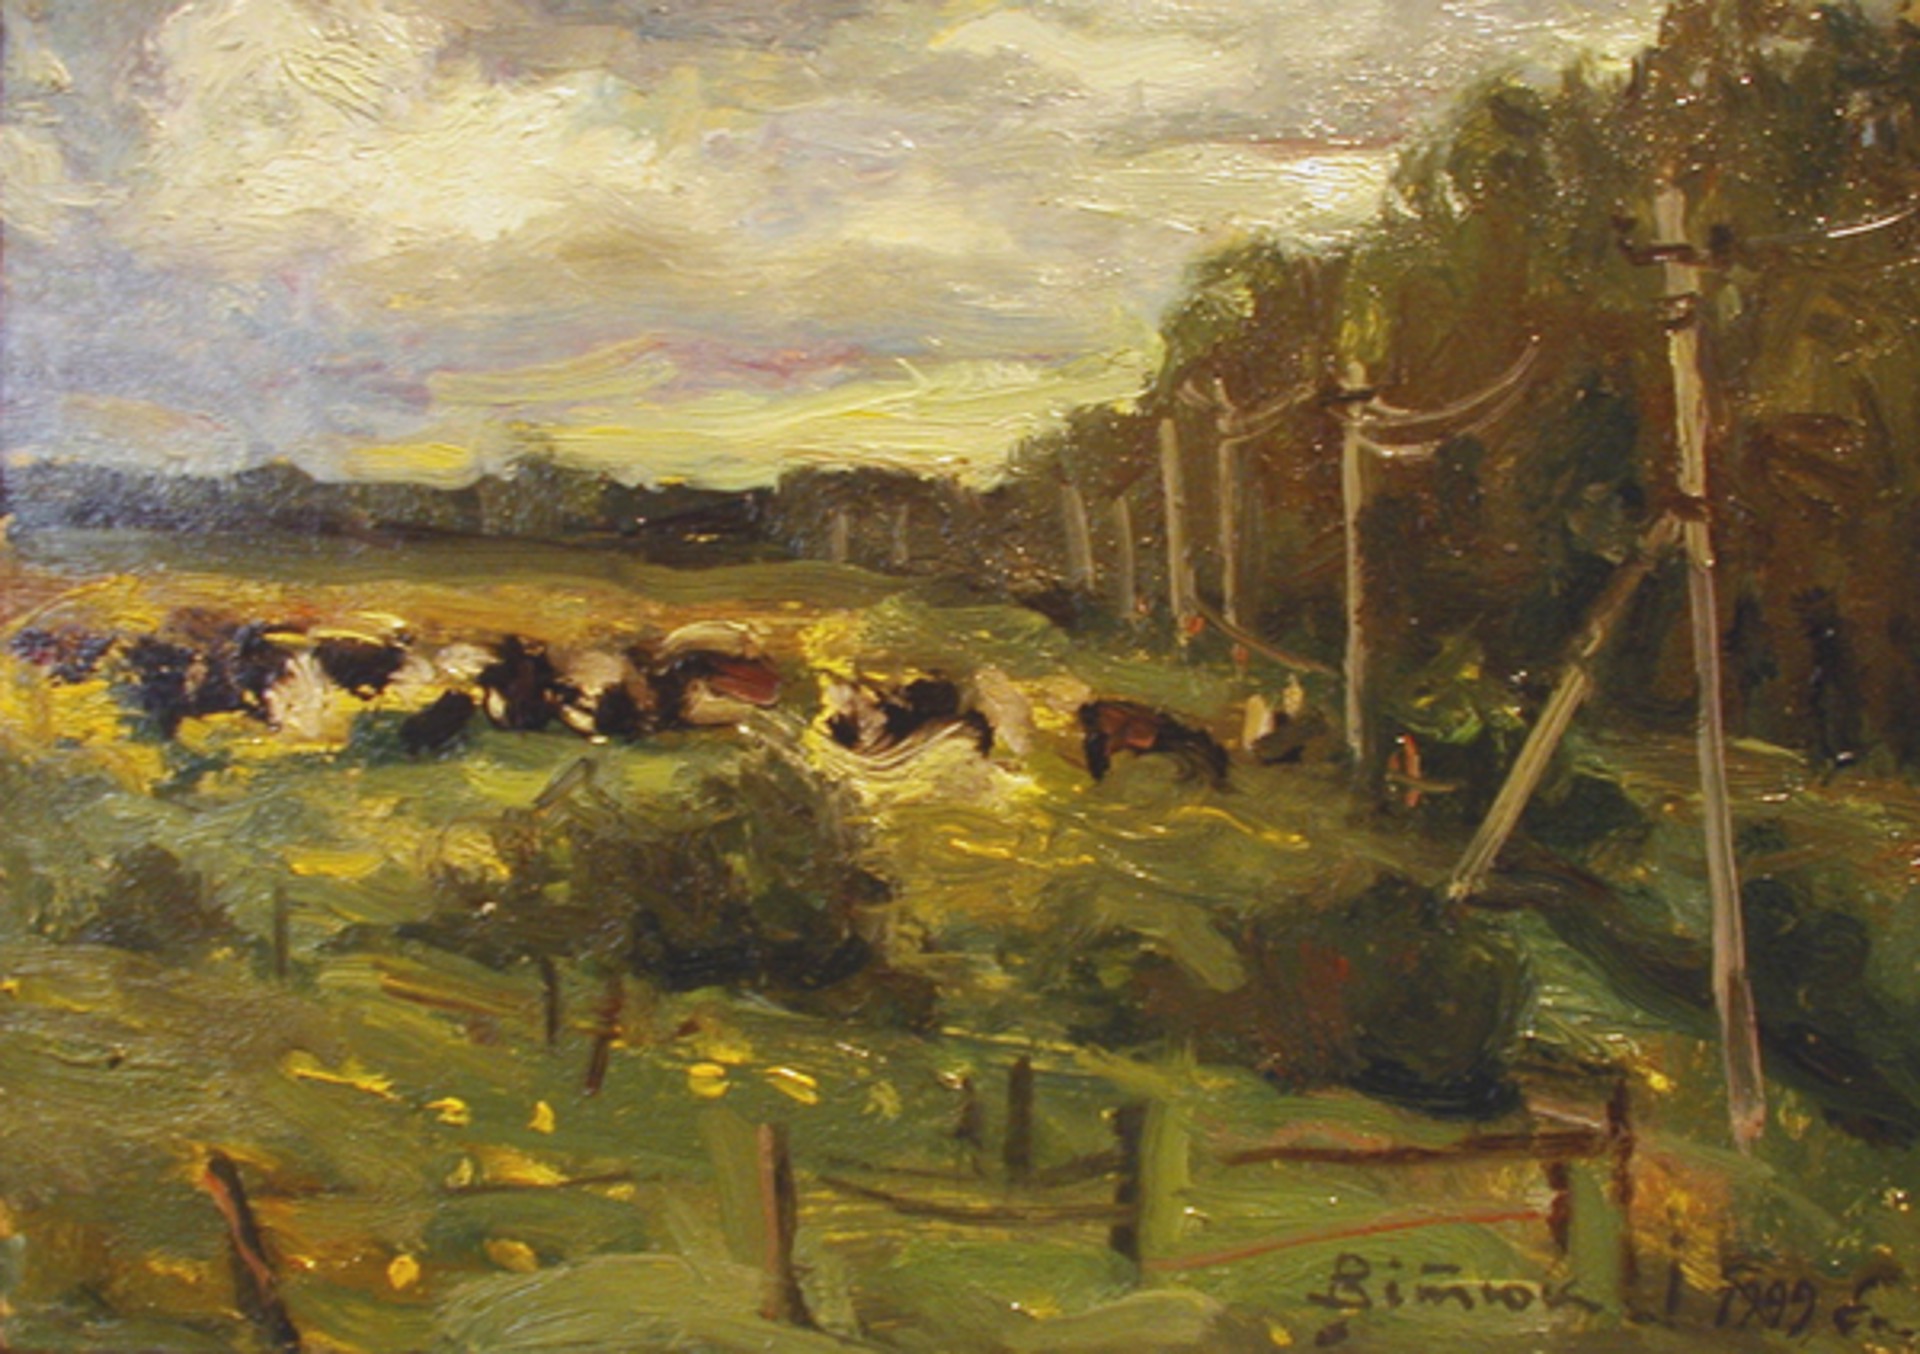 Herd of Cows in the Field by Ivan Vityuk